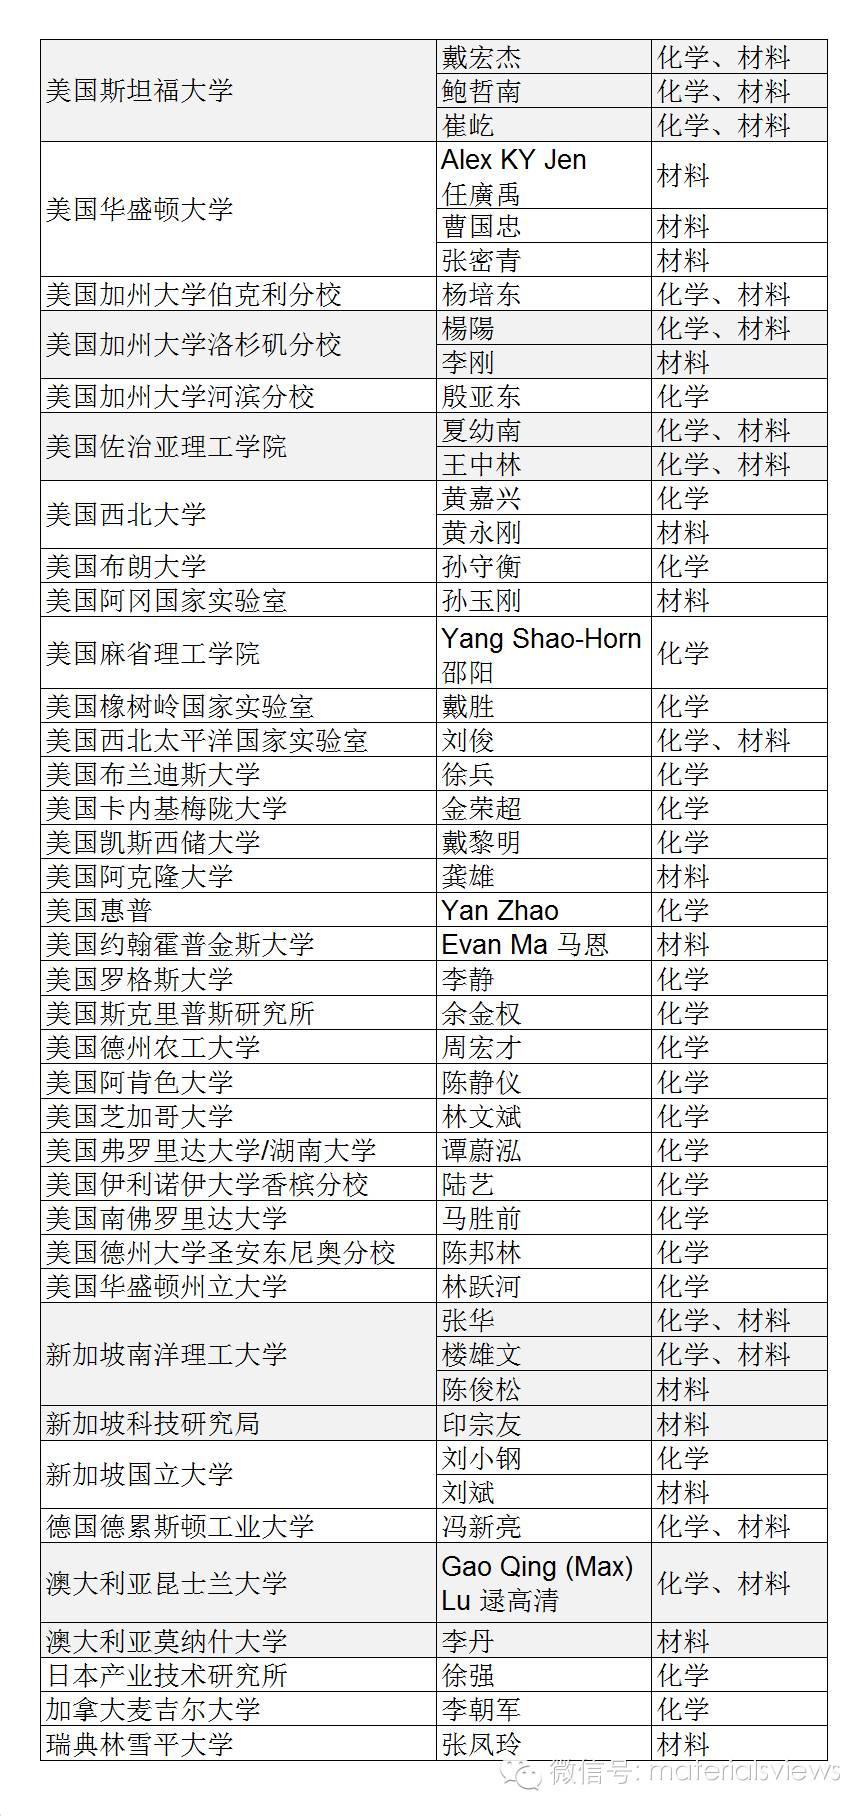 2015年高被引华人科学家名单（化学与材料方向）【修订】